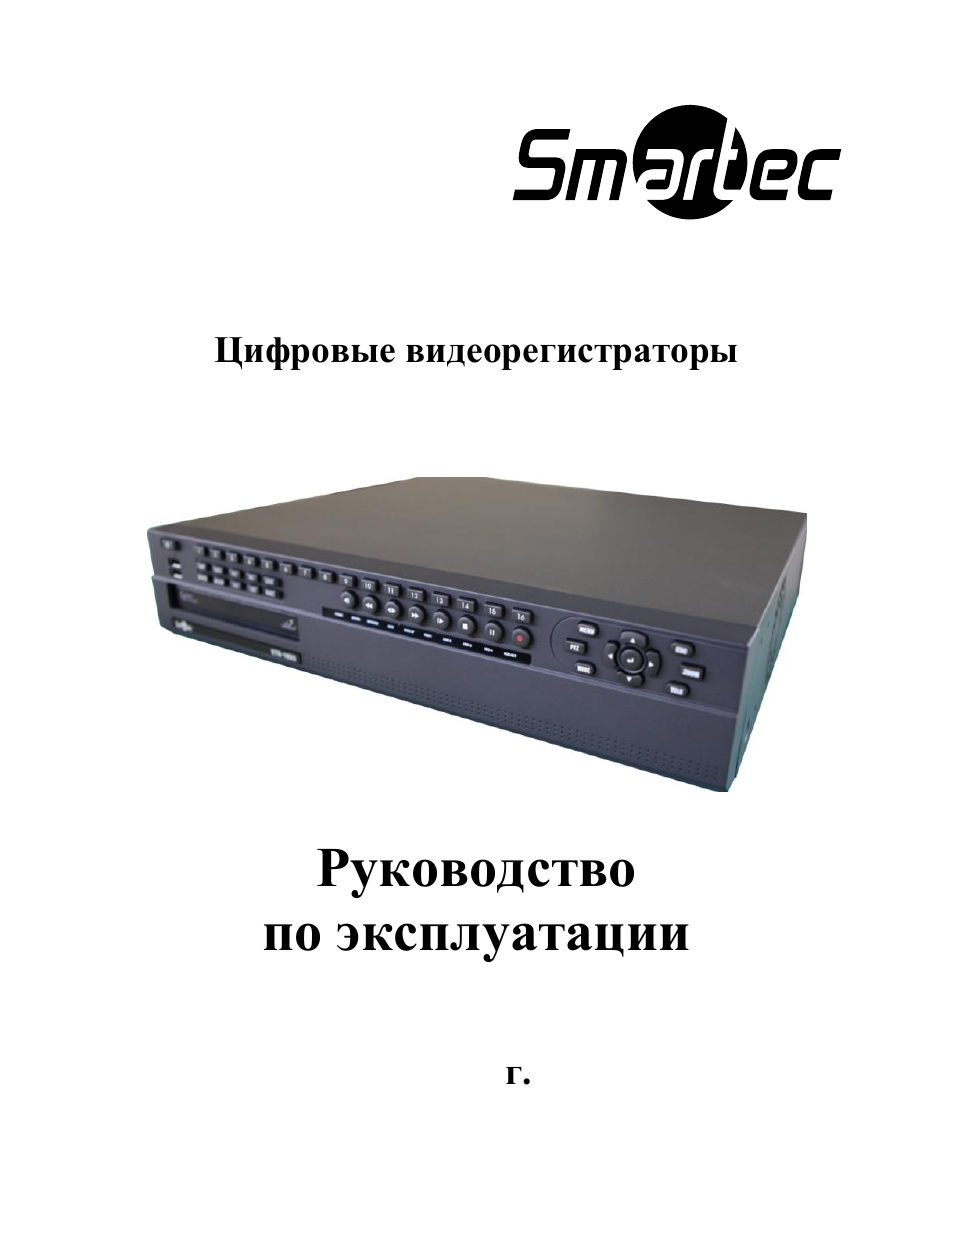 Ycs 1015 int видеорегистратор инструкция